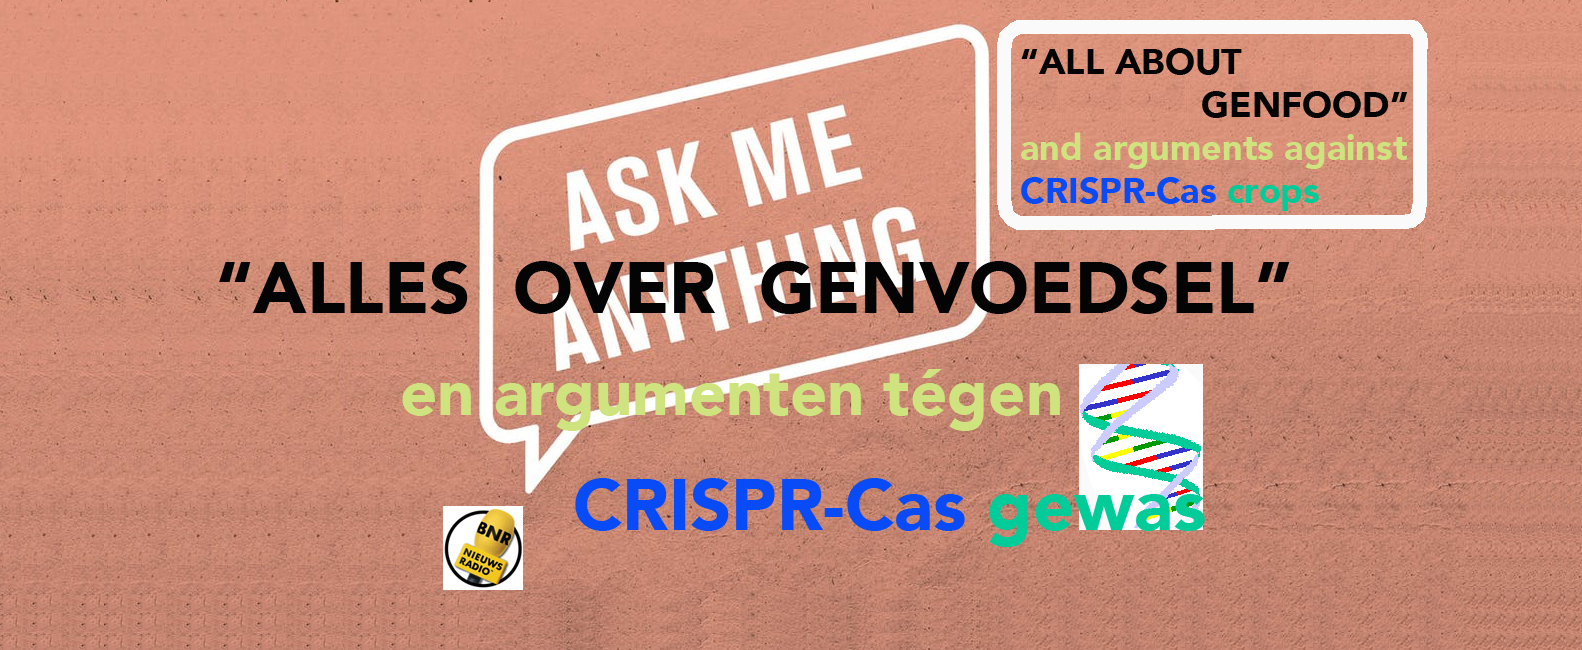 Je bekijkt nu “Alles over genvoedsel” en argumenten tégen CRISPR-Cas gewas